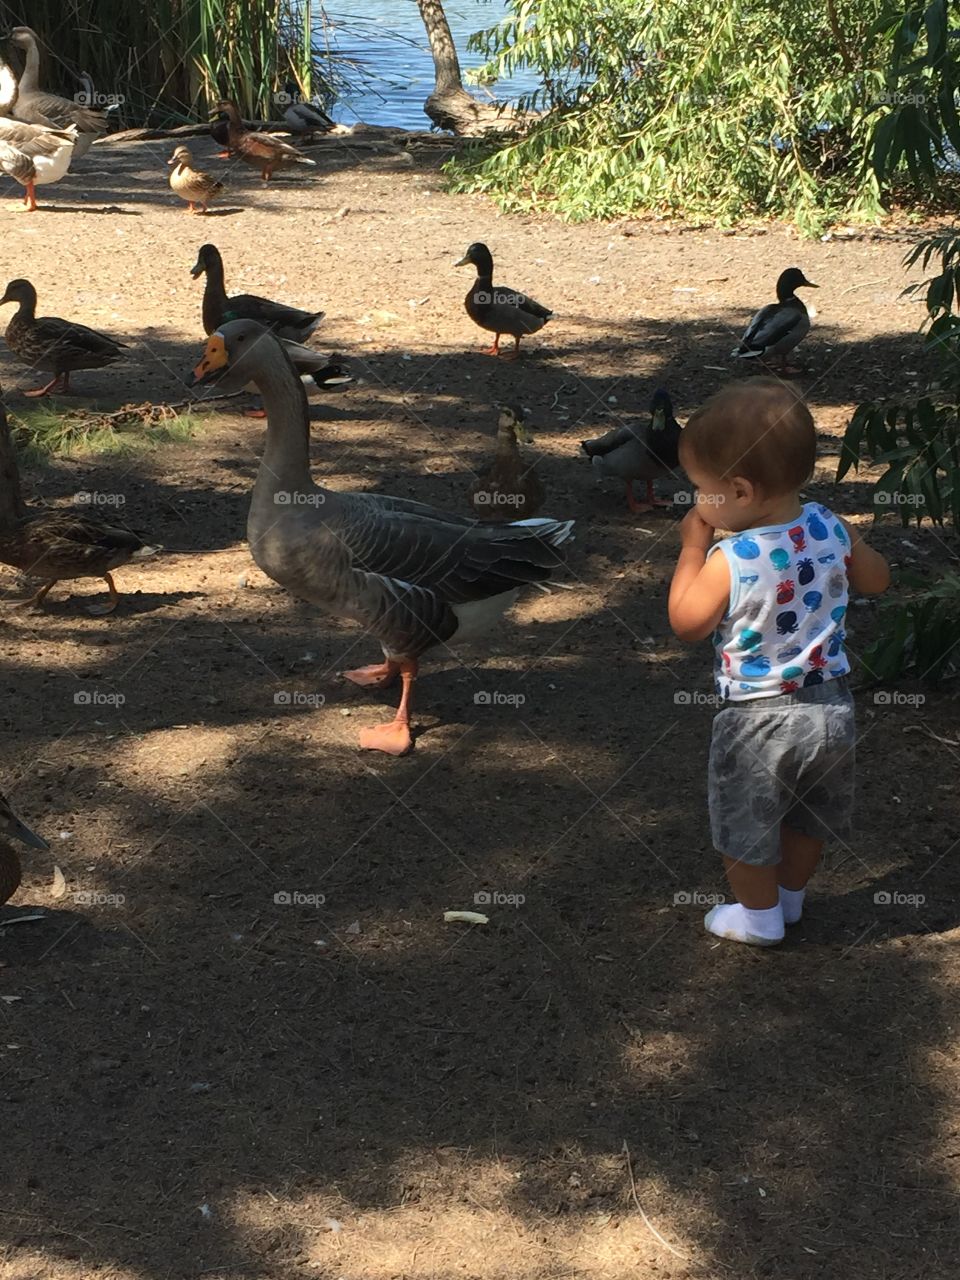 Duck pond curiosity